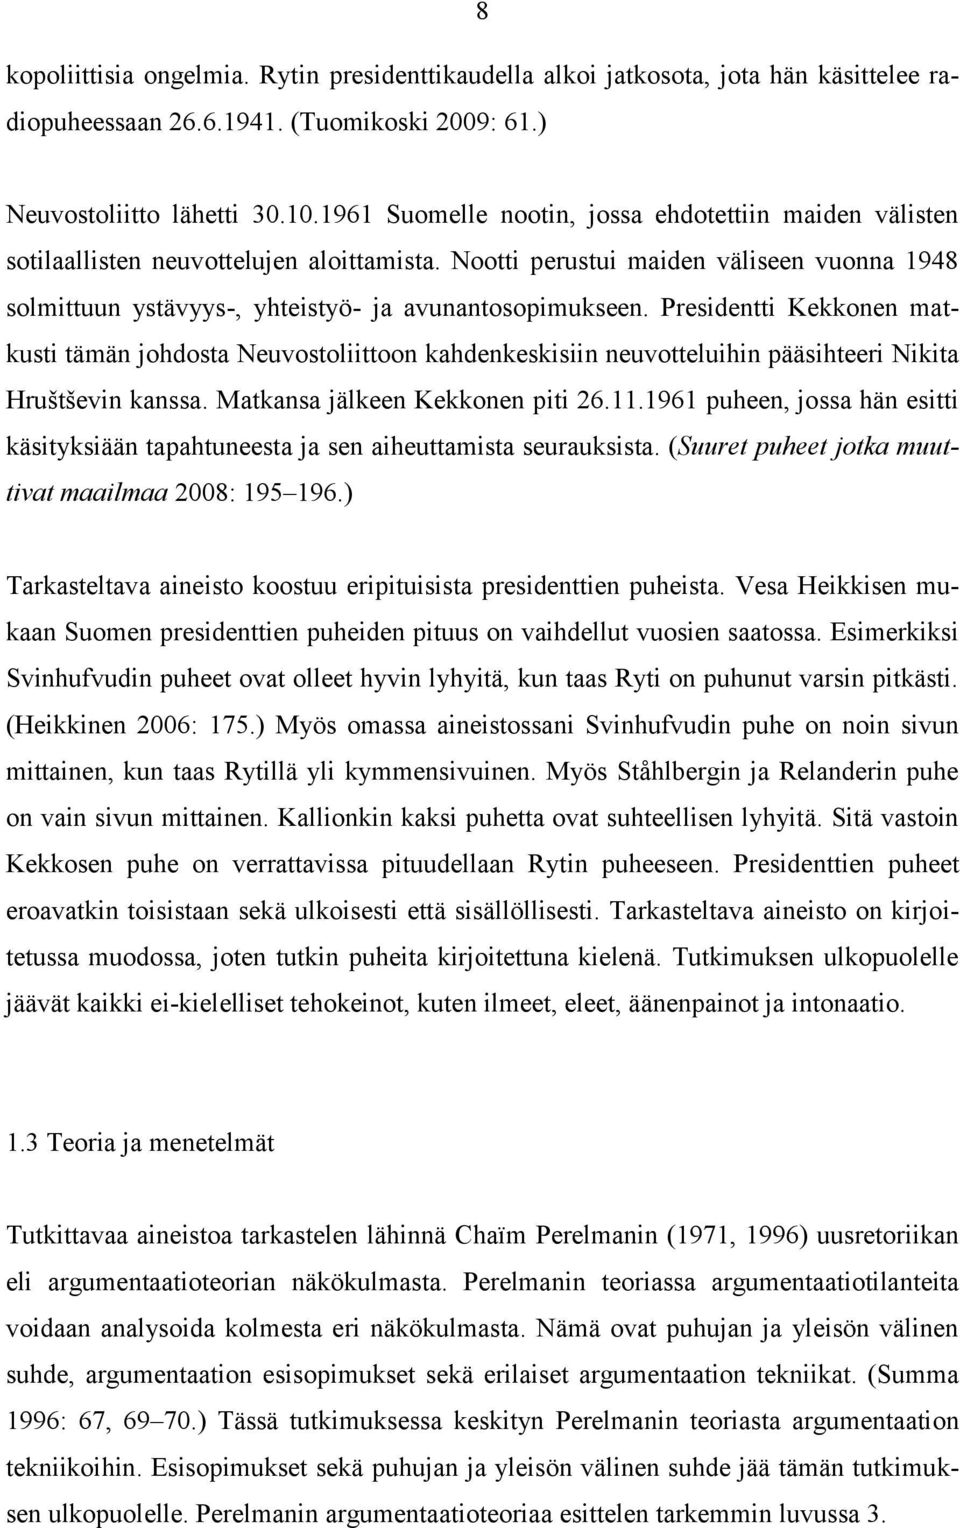 Presidentti Kekkonen matkusti tämän johdosta Neuvostoliittoon kahdenkeskisiin neuvotteluihin pääsihteeri Nikita Hruštševin kanssa. Matkansa jälkeen Kekkonen piti 26.11.